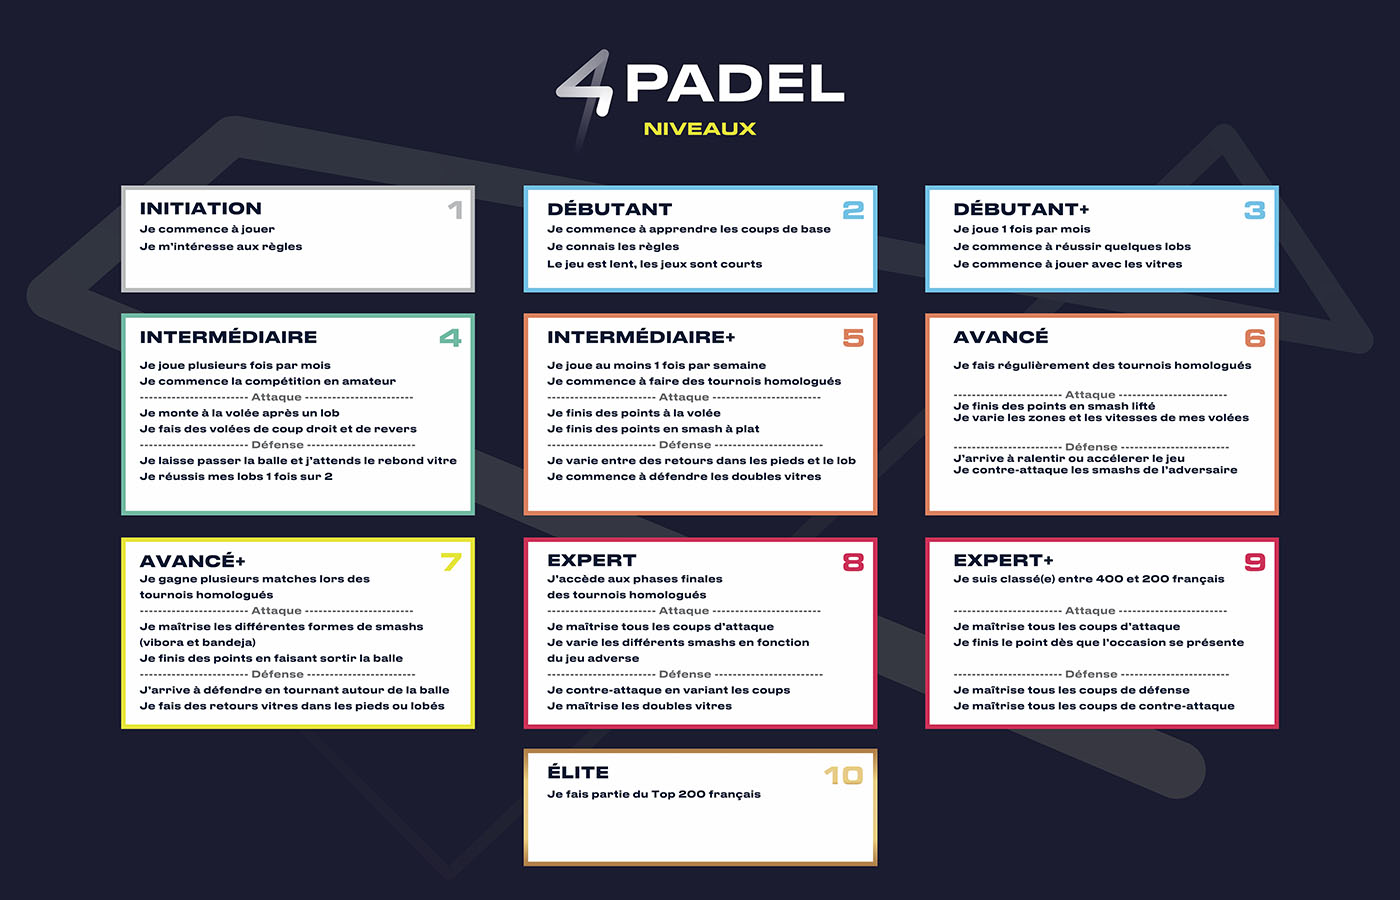 4PADEL Notícias revisita a tabela de níveis de Padel AROUND